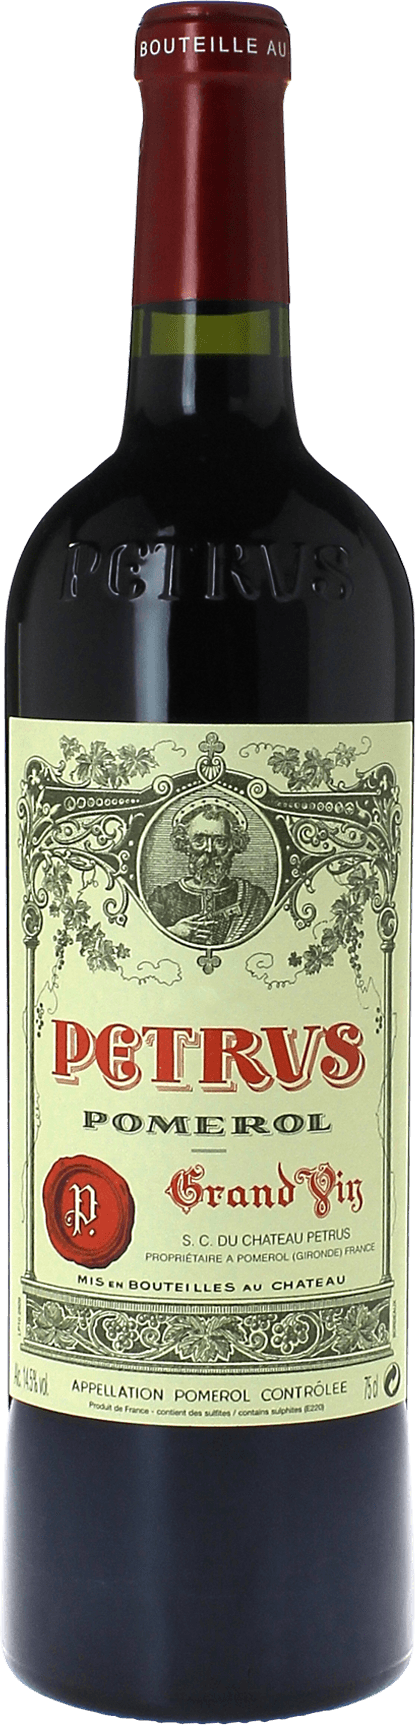 Petrus 2005  Pomerol, Bordeaux rouge